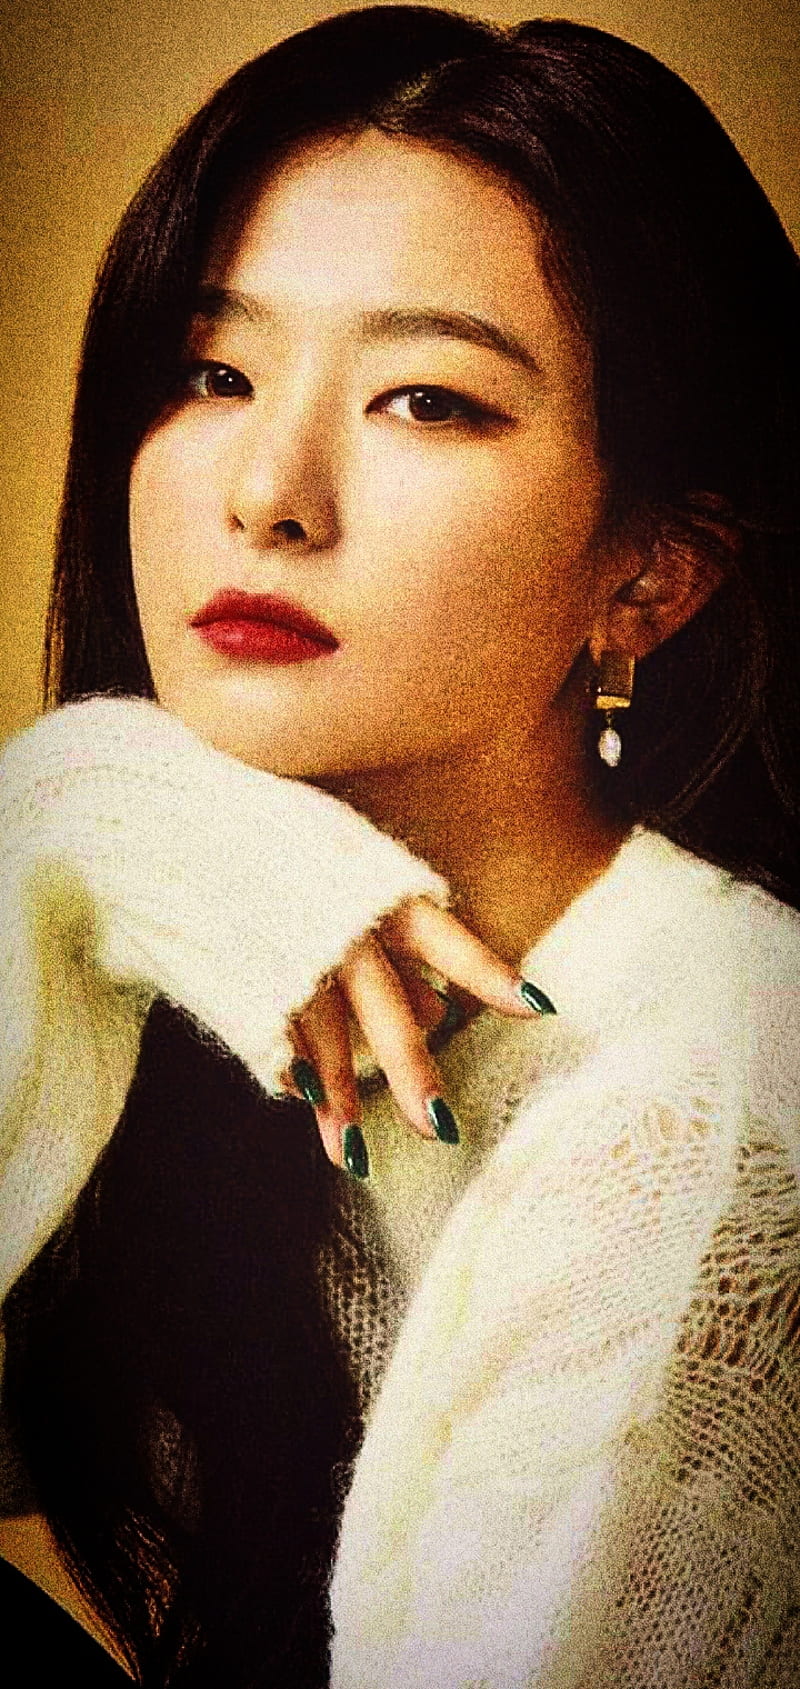 Red Velvet Seulgi, k-pop, red velvet, HD phone wallpaper